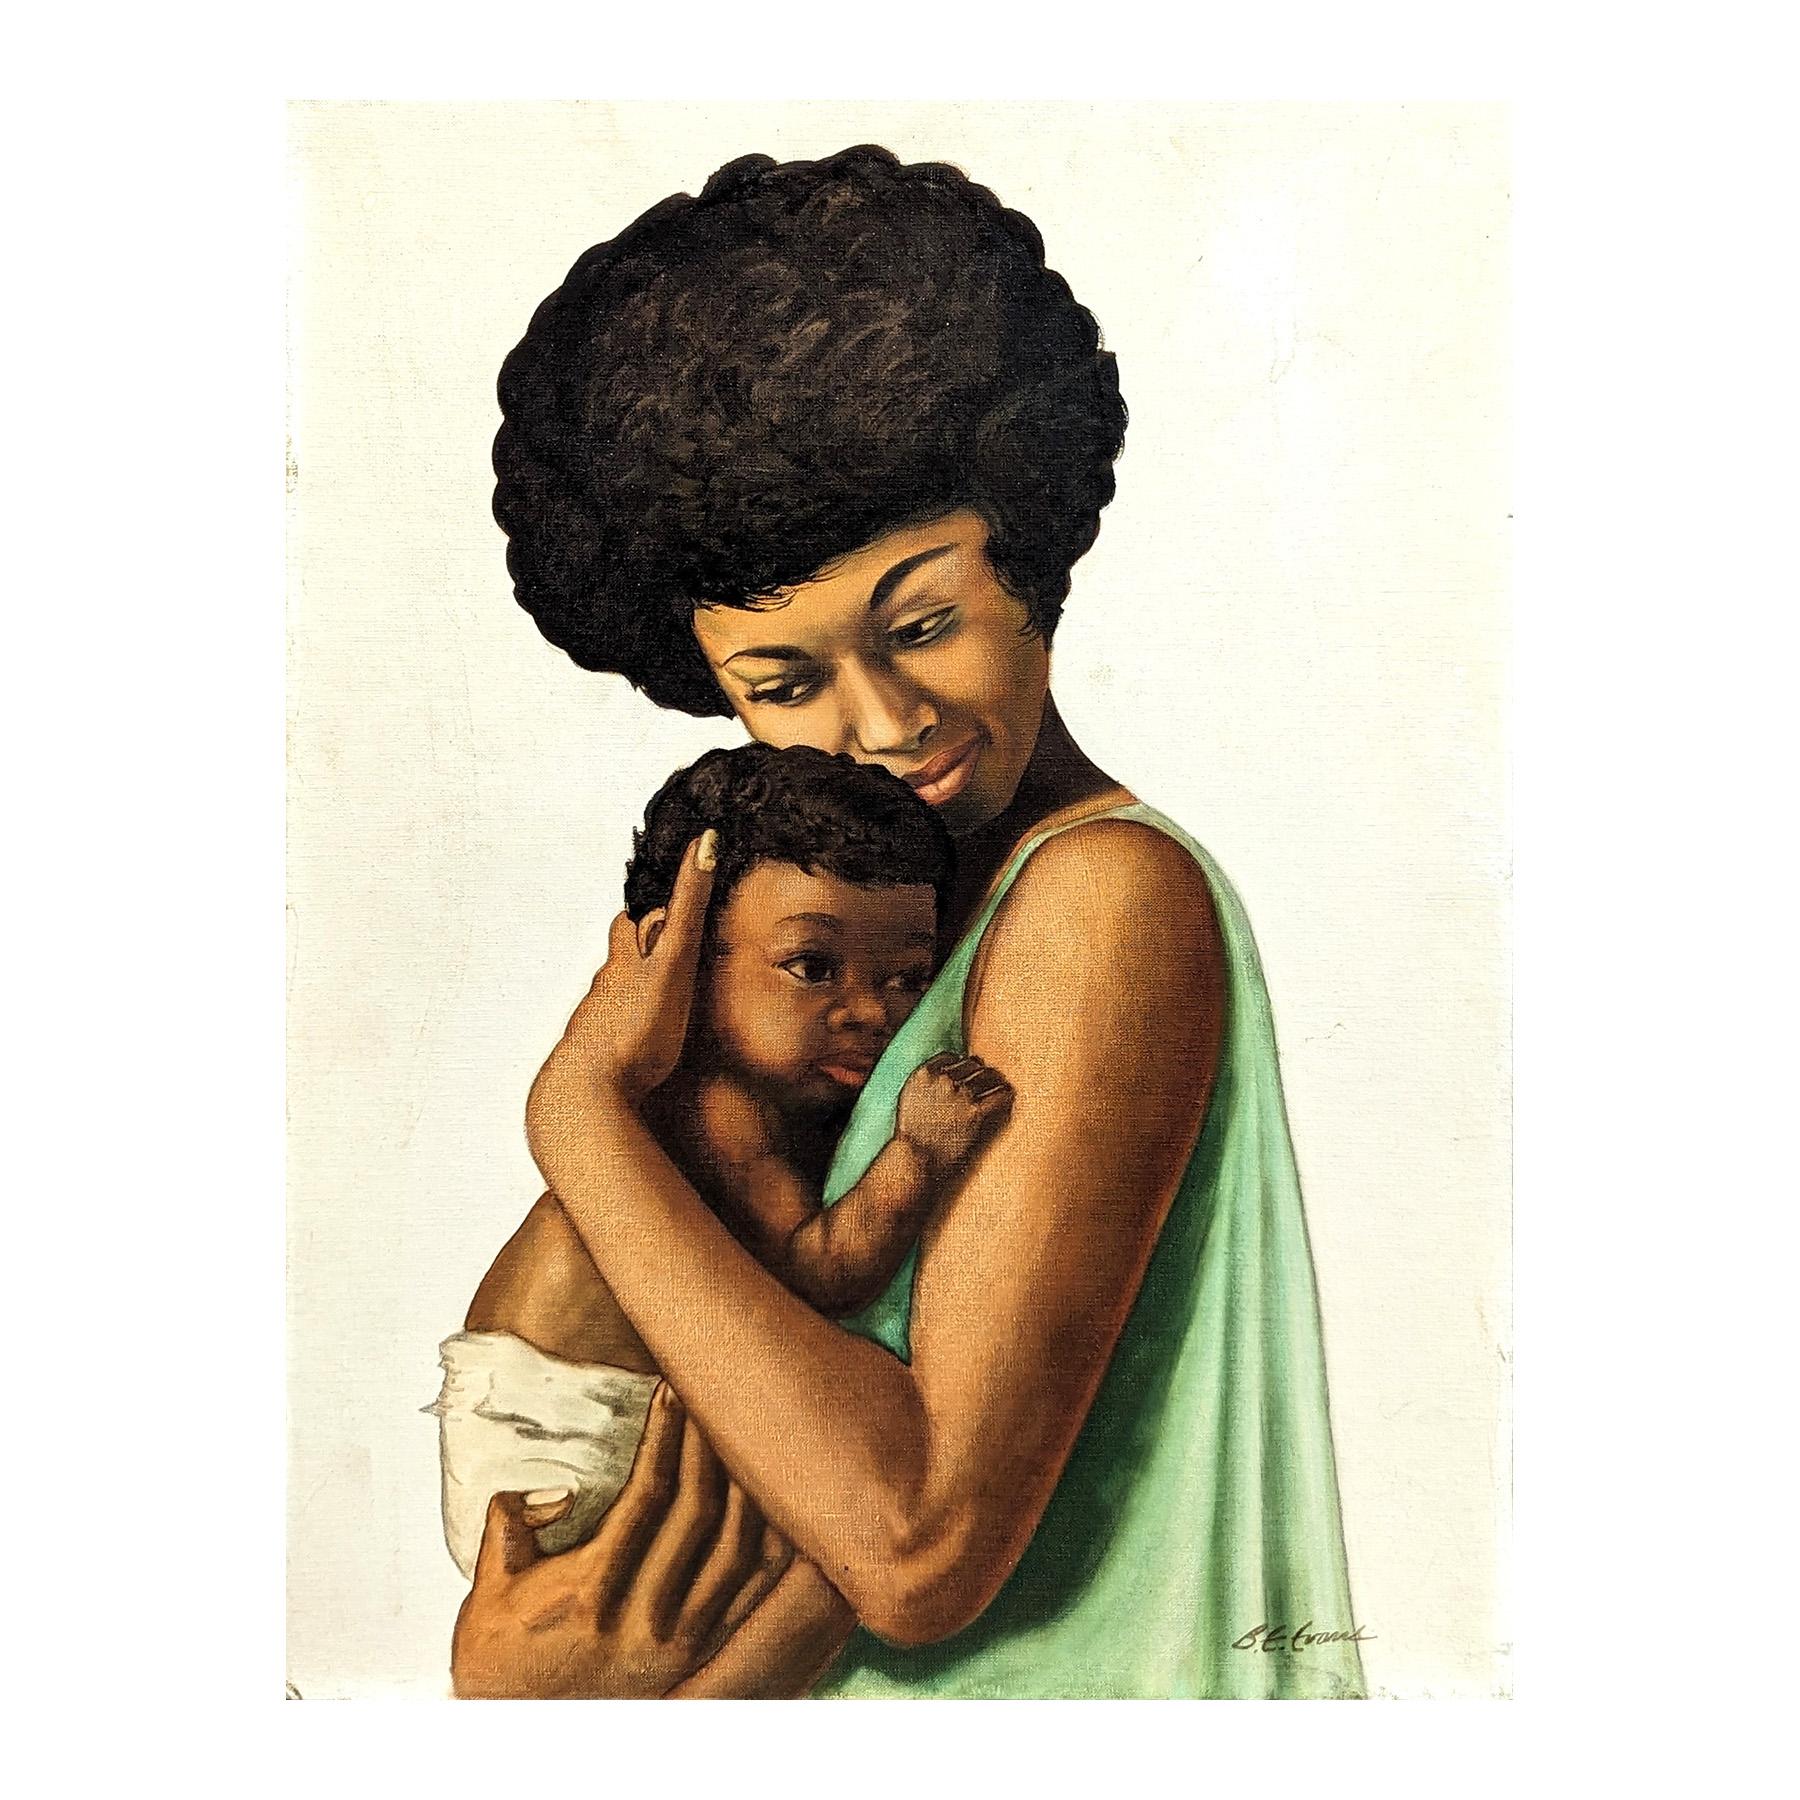 Mère et enfant, portrait figuratif ancien d'une femme noire et d'un enfant - Painting de Buford Evans